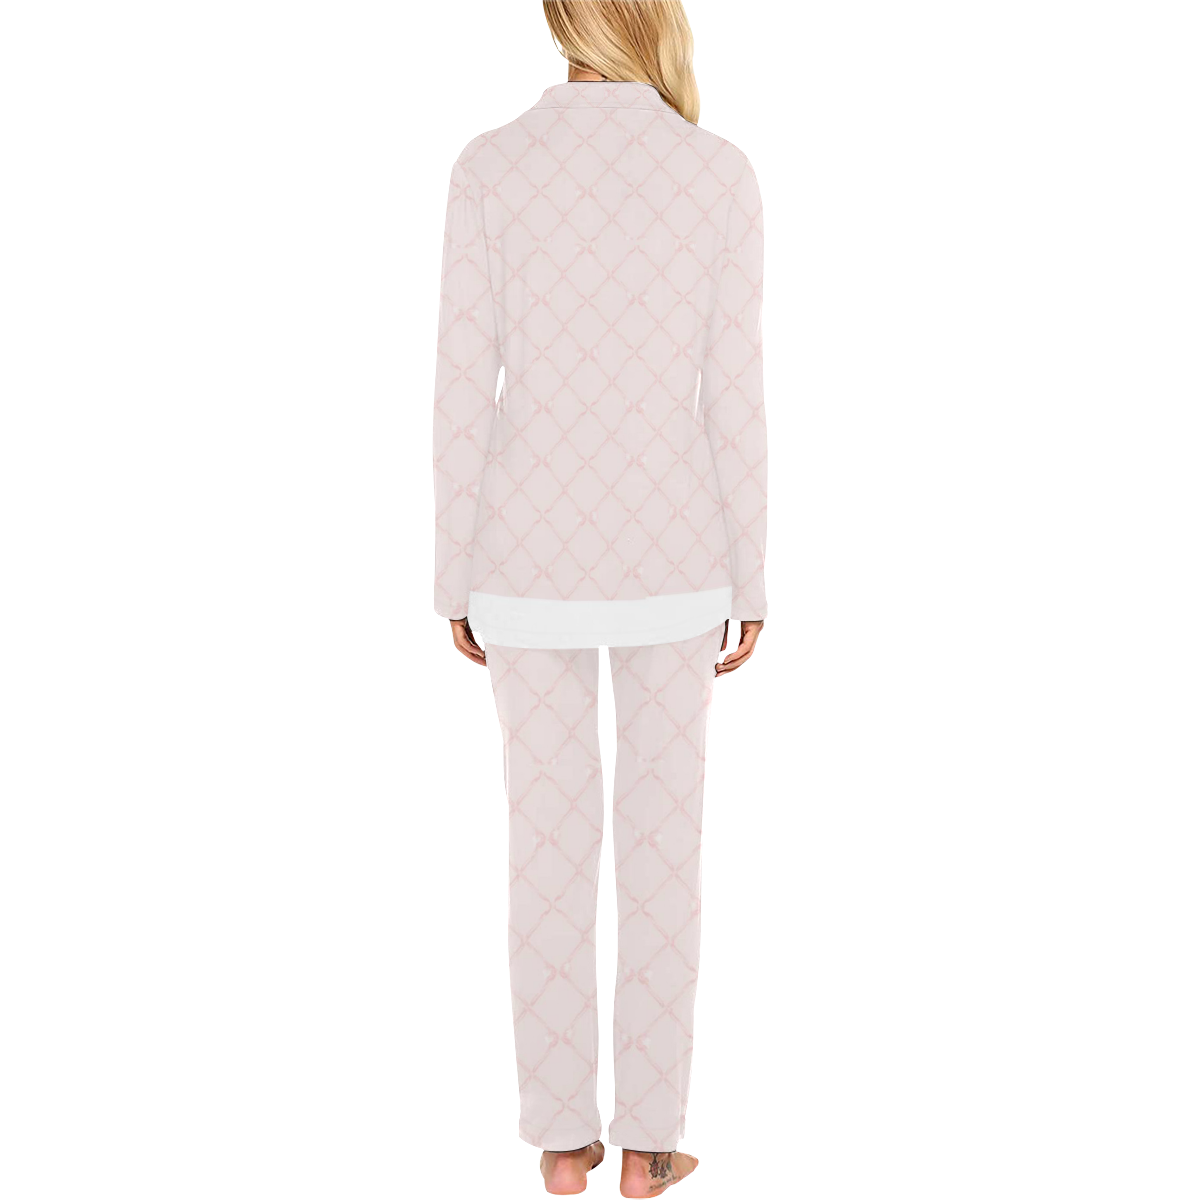 pinkbowtrellislongpjs Women's Long Pajama Set